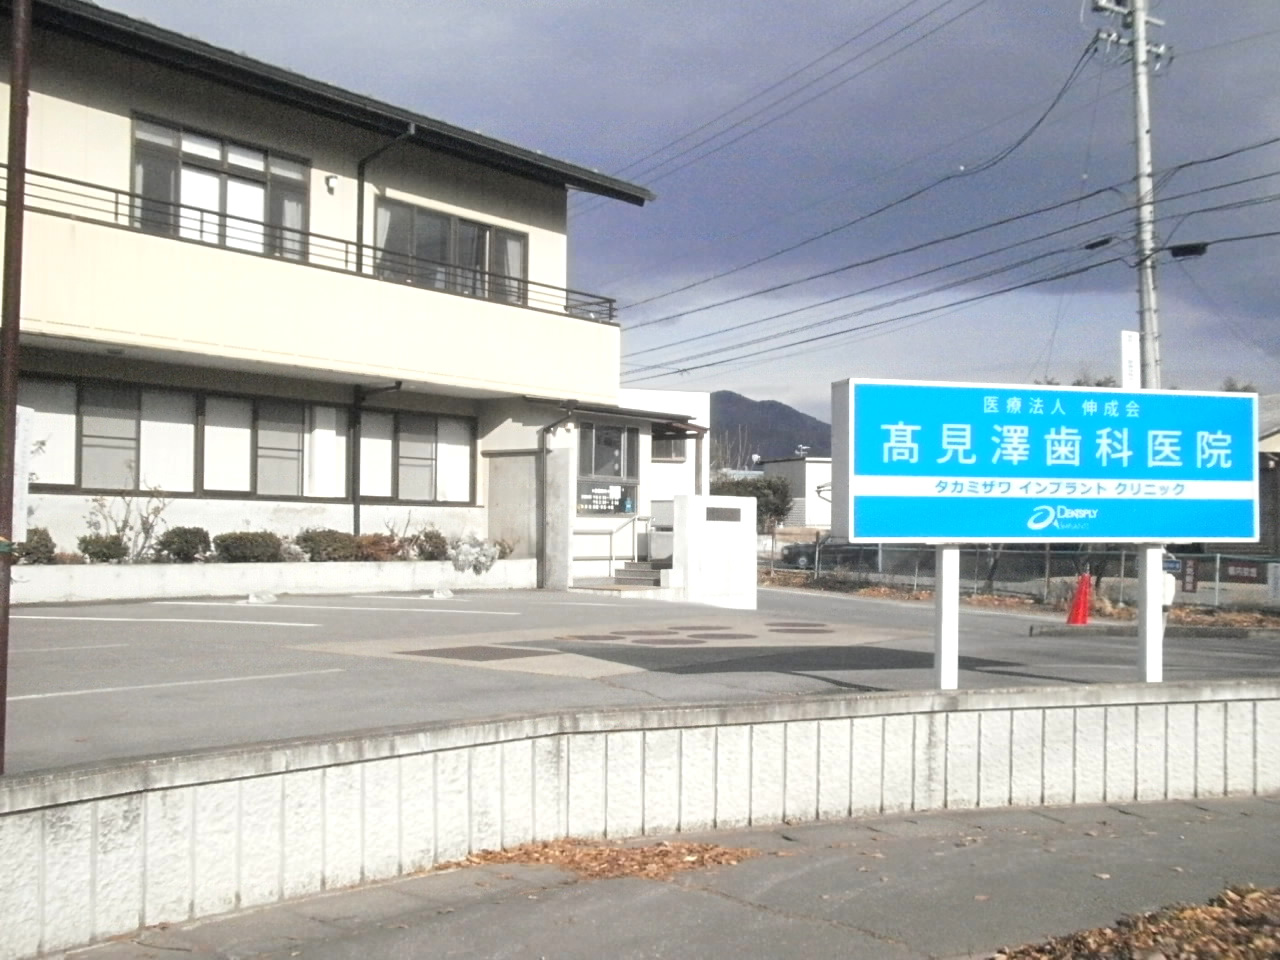 長野県佐久市の高見澤歯科医院です。インプラント、歯科矯正のご相談などお気軽にどうぞ。